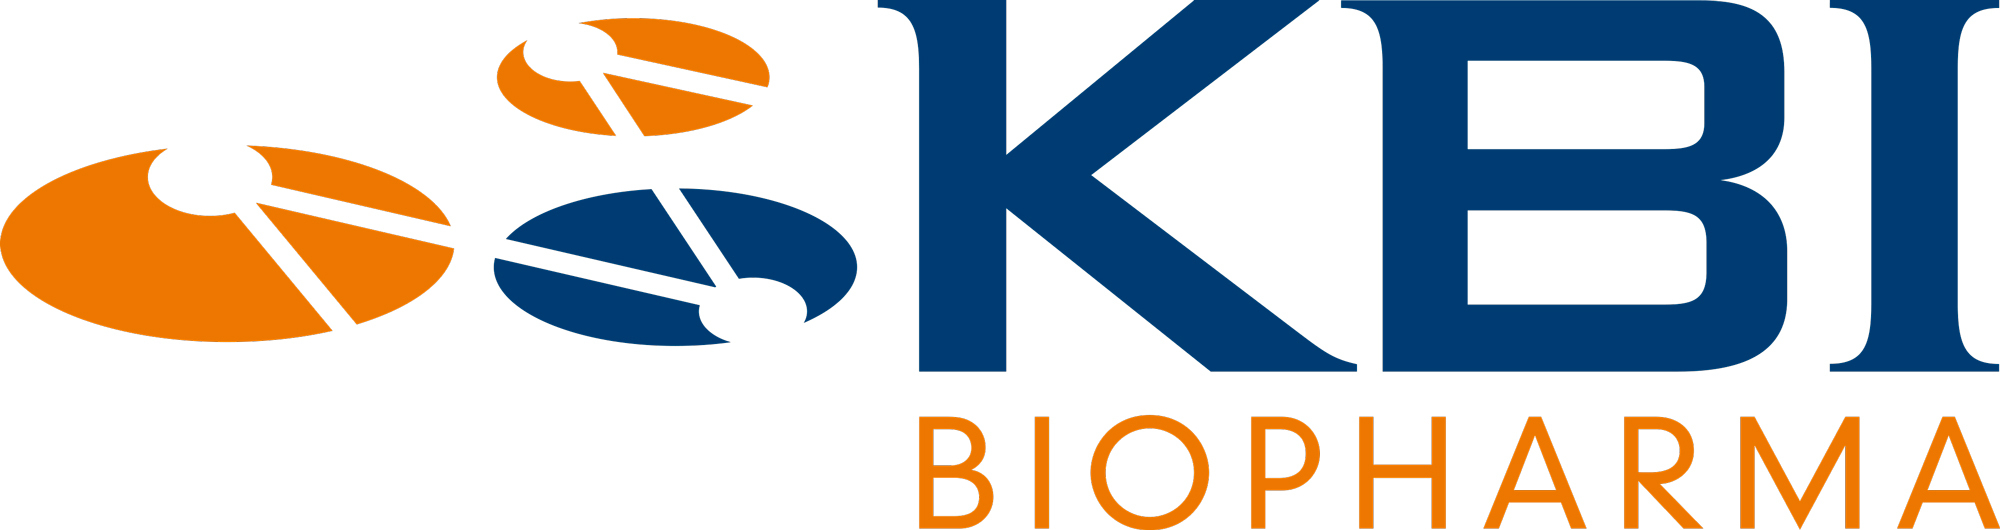 KBI_Biopharma_Logo